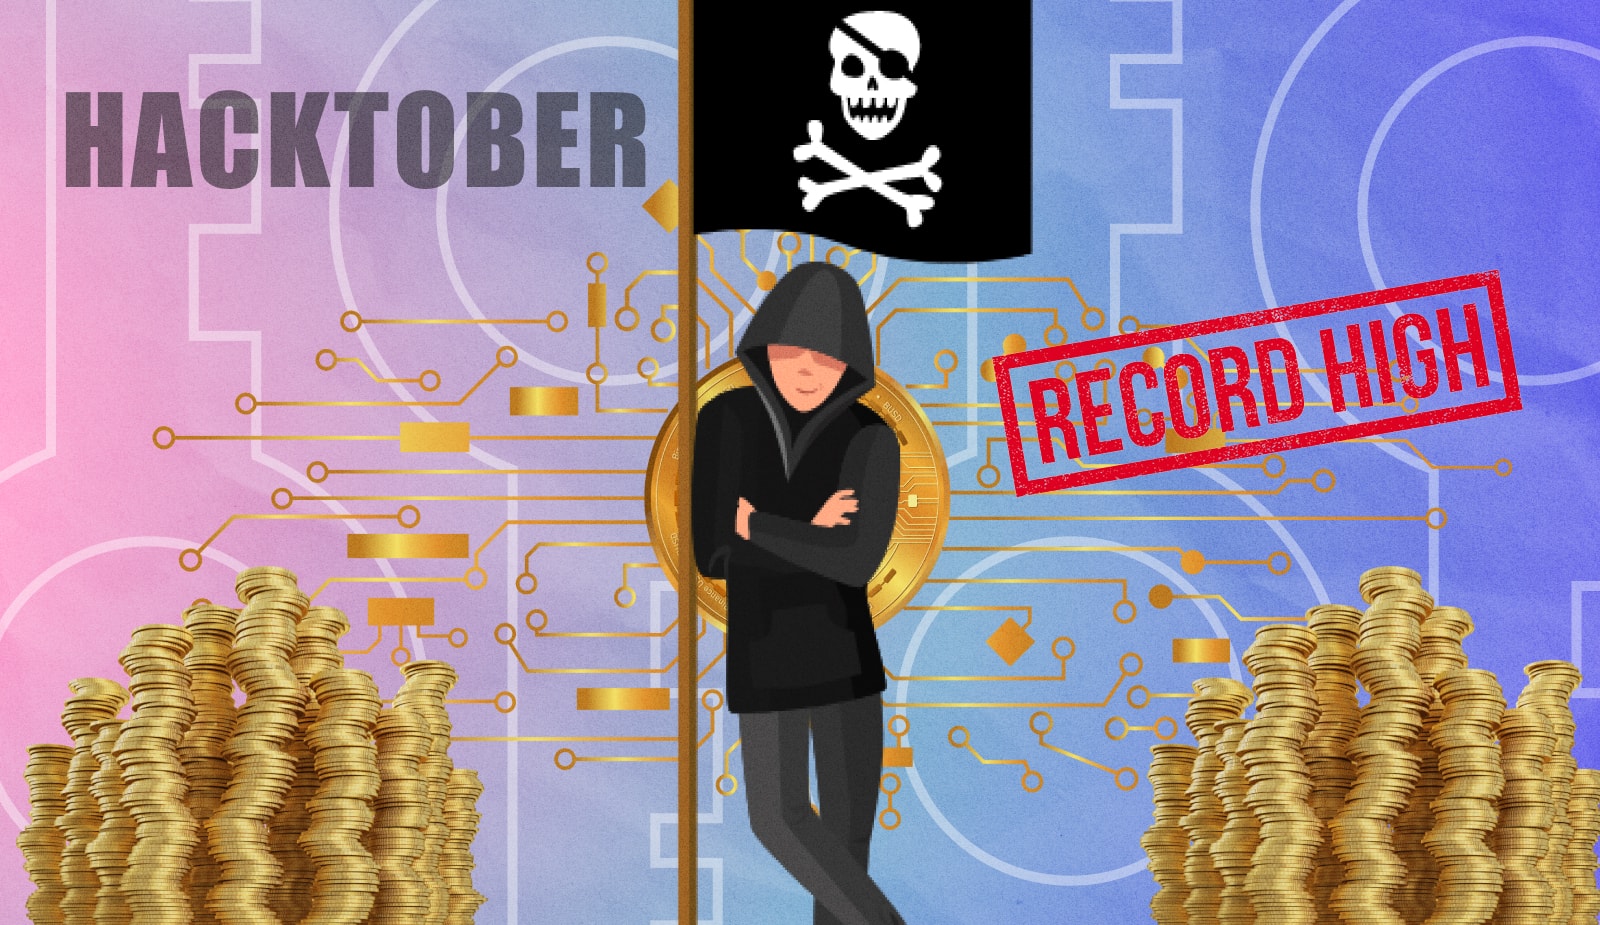 Не October, а Hacktober: за 12 дней крипто-взломы побили все рекорды. Заглавный коллаж новости.